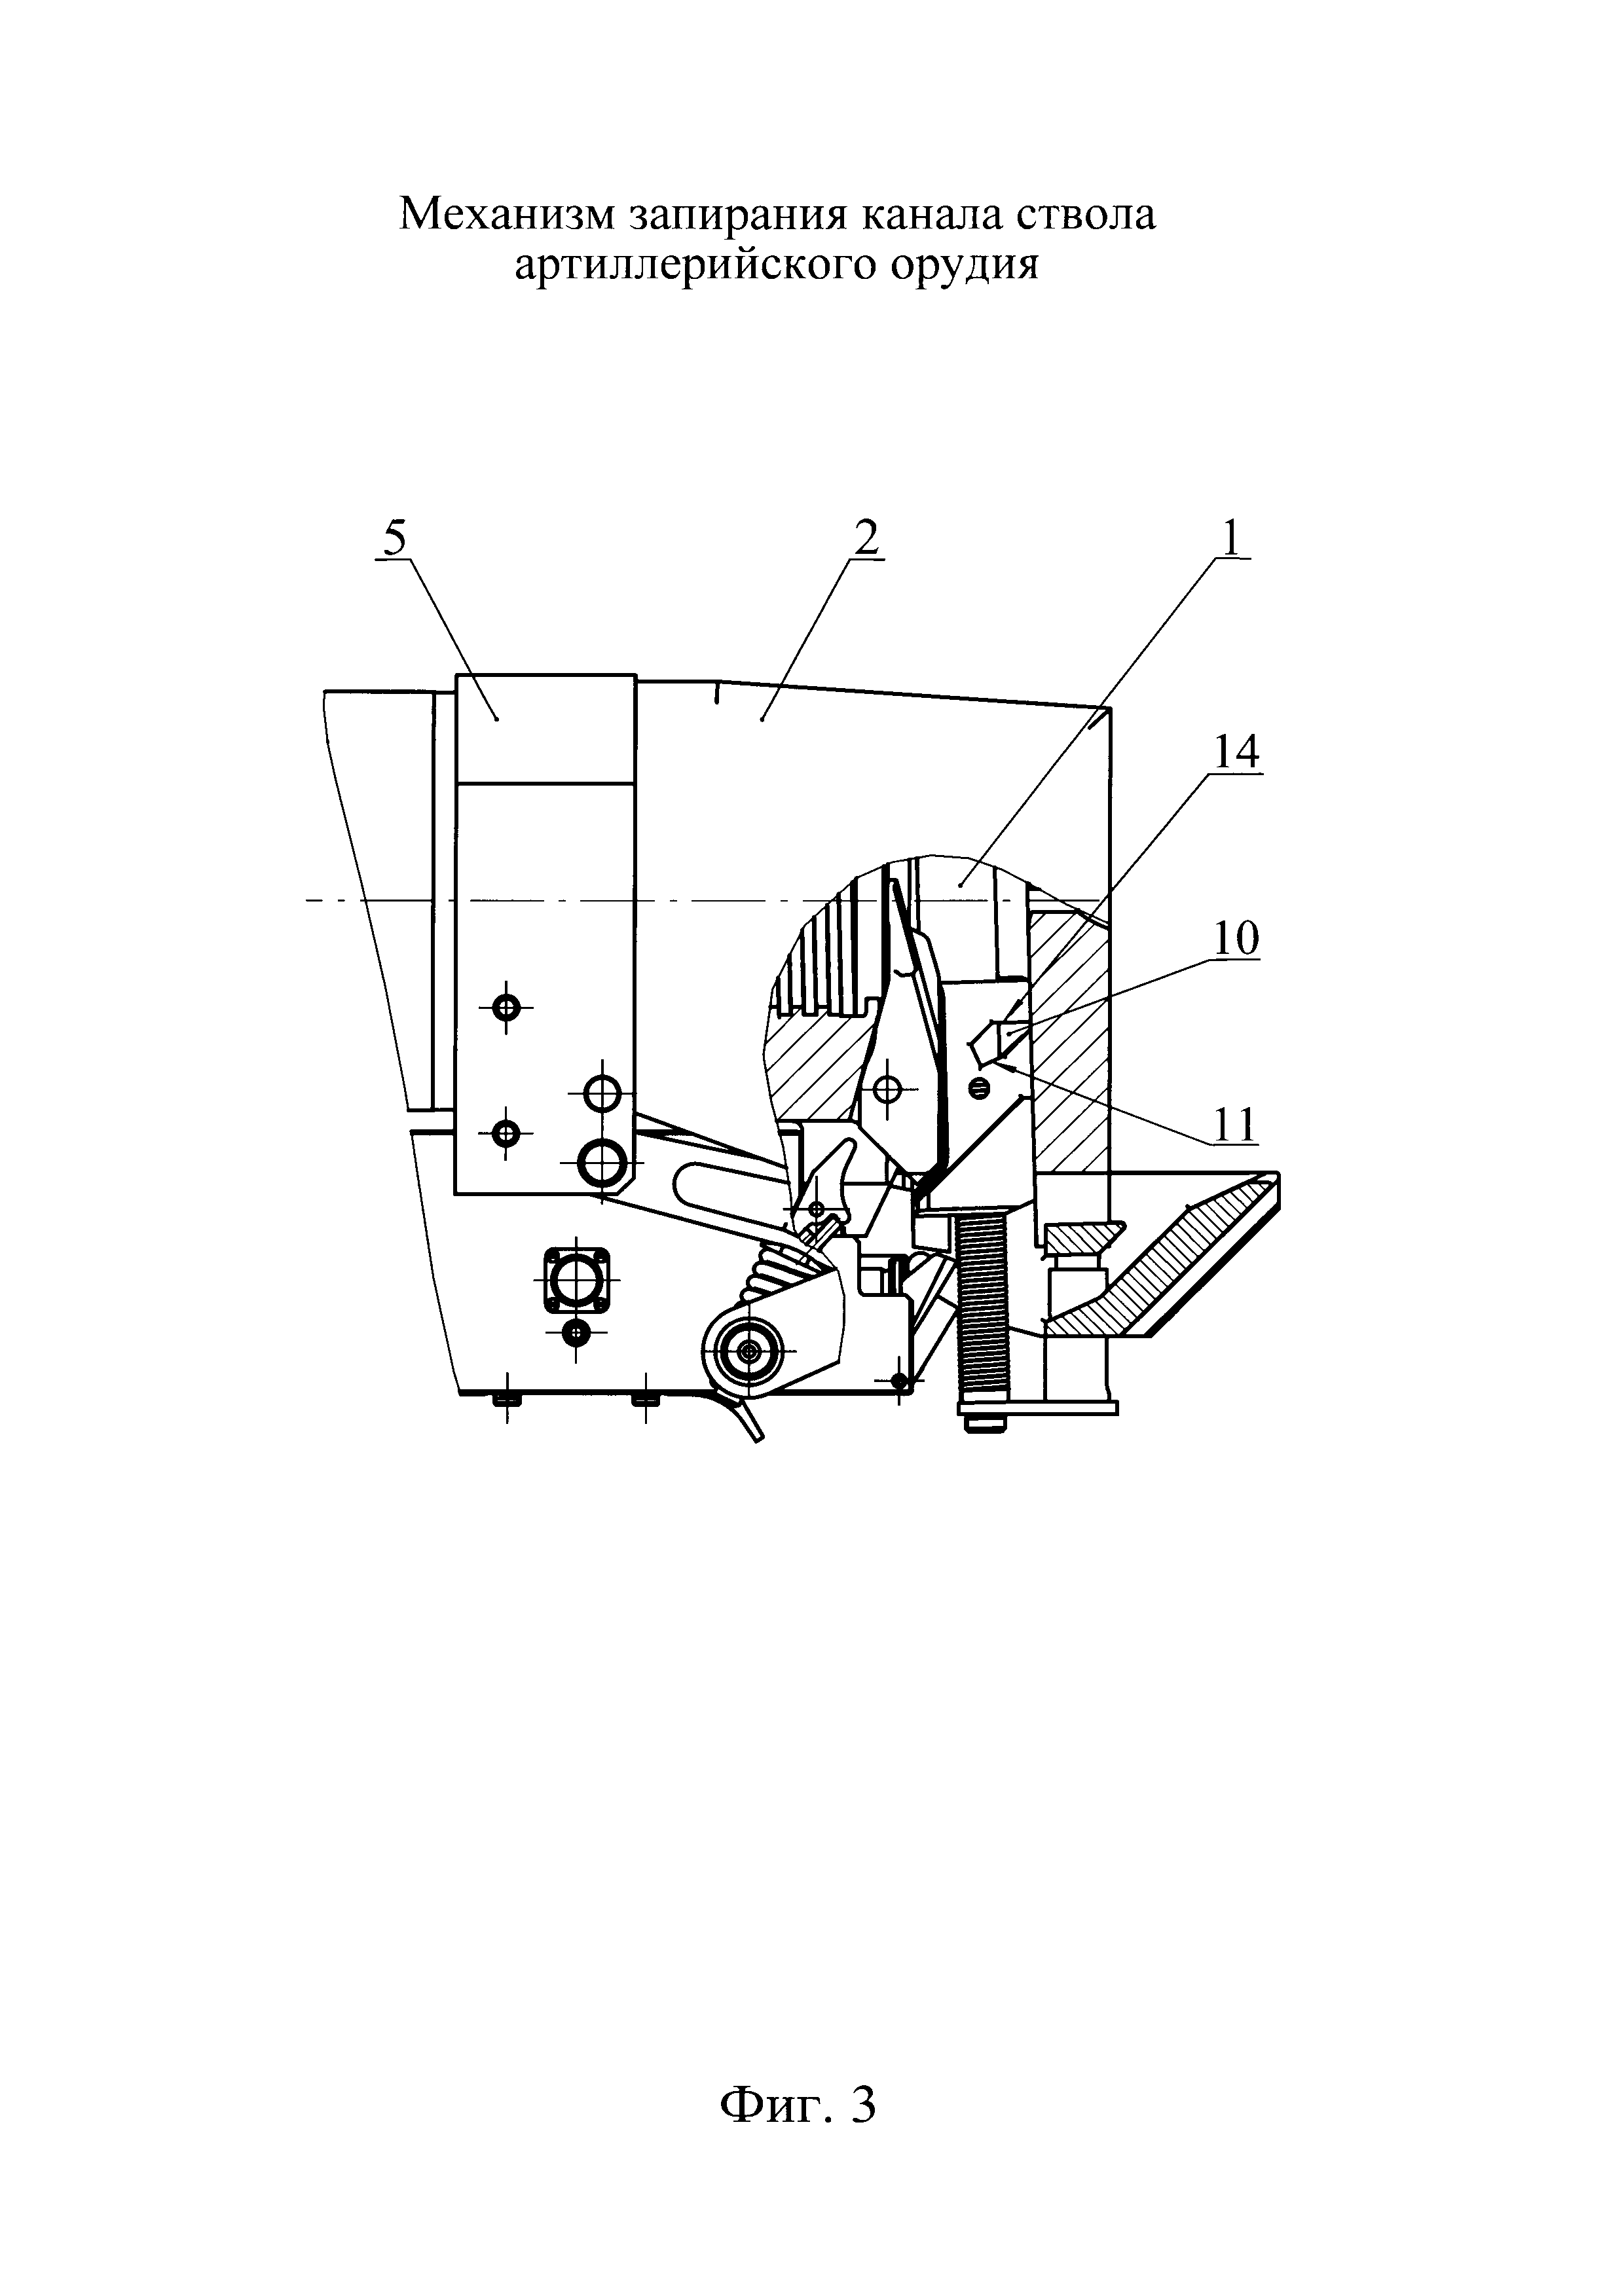 Механизм запирания канала ствола артиллерийского орудия